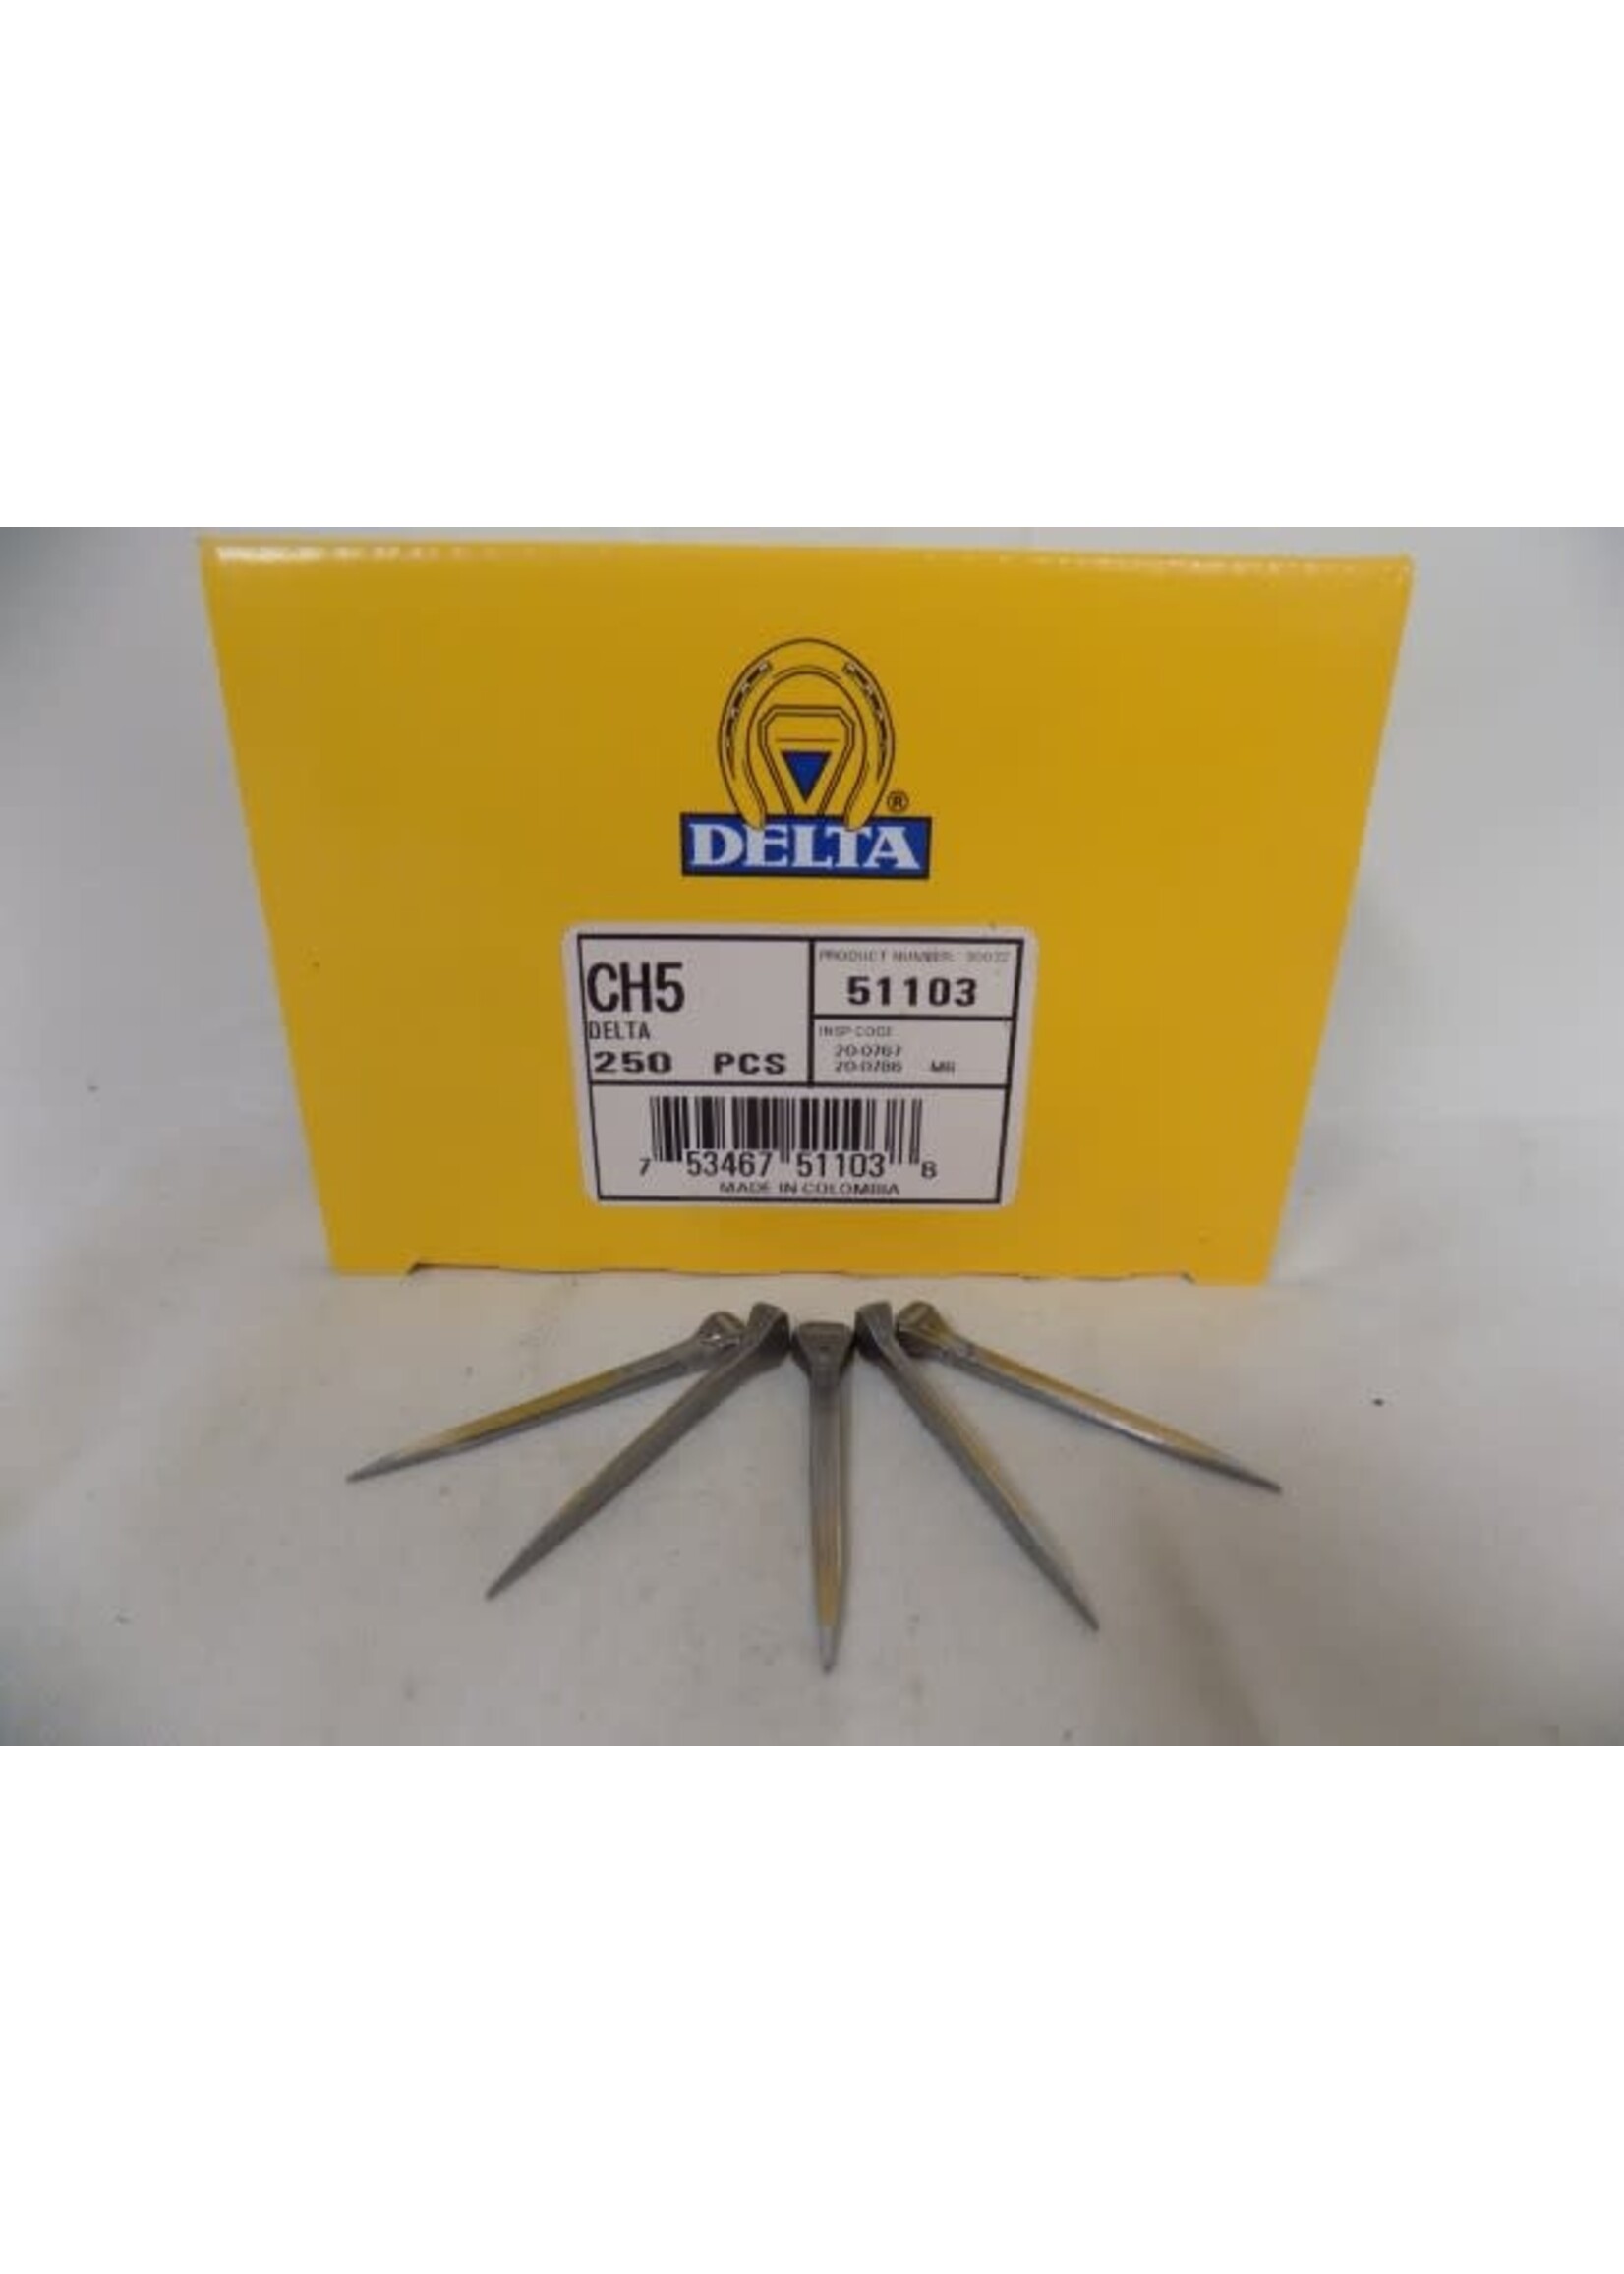 Delta Delta City Head Nails